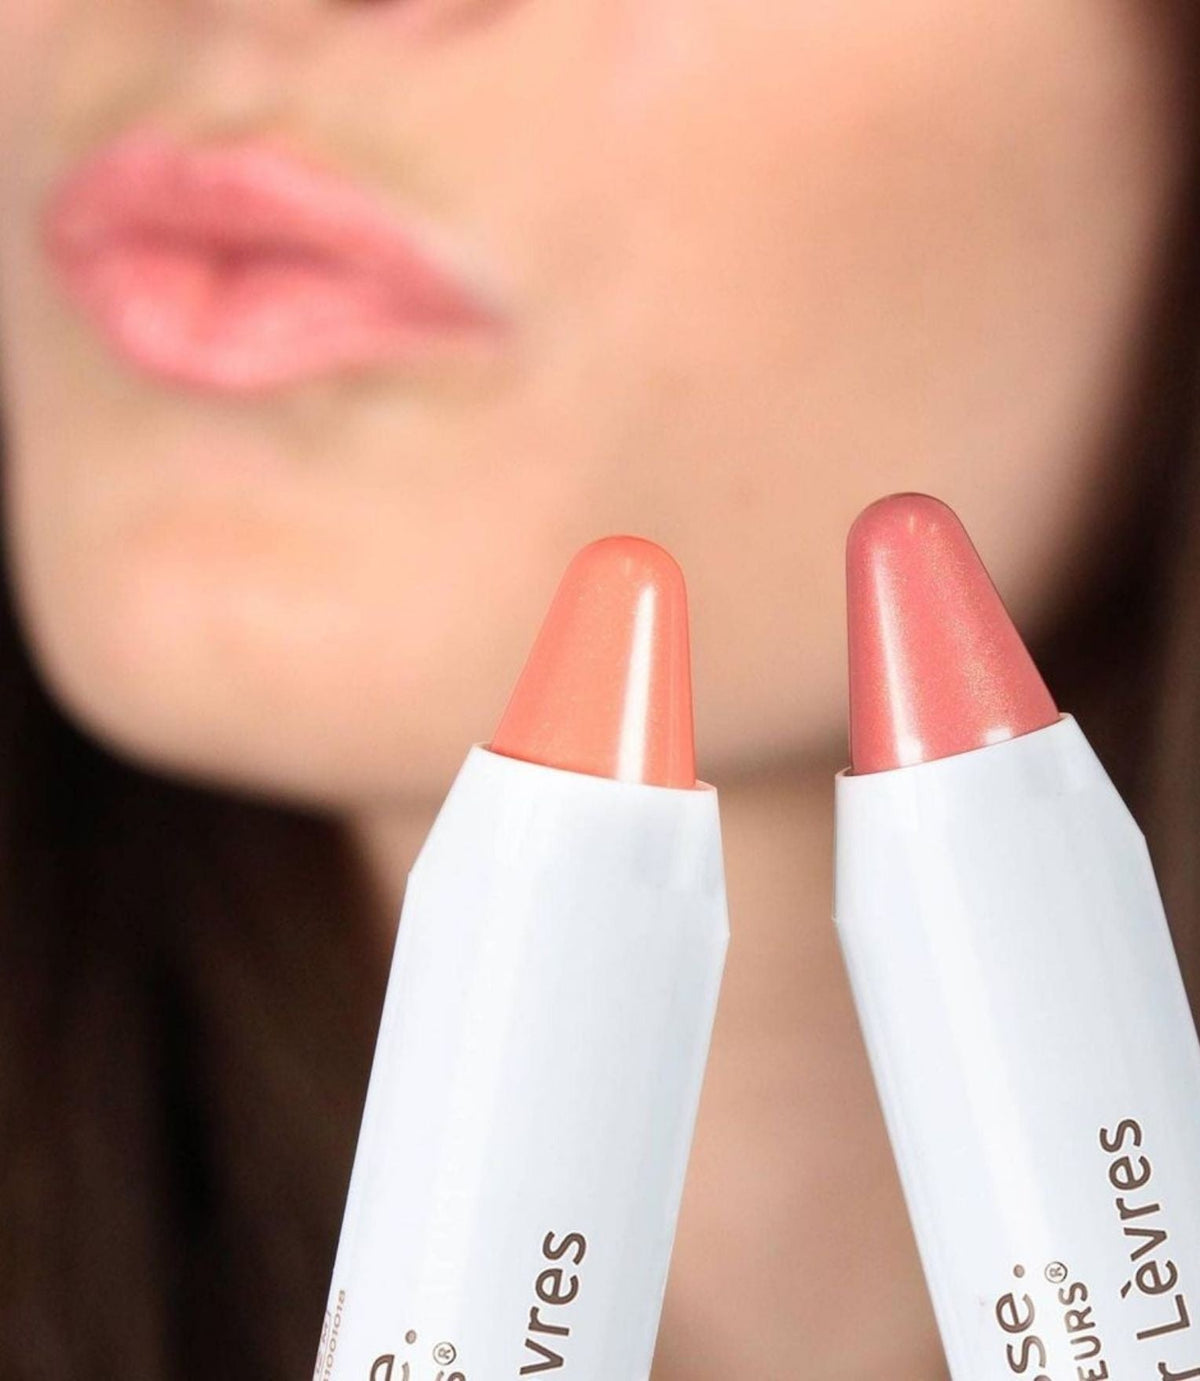 Artist Secret Comfort Lip Balm Pink Nude 2.5g